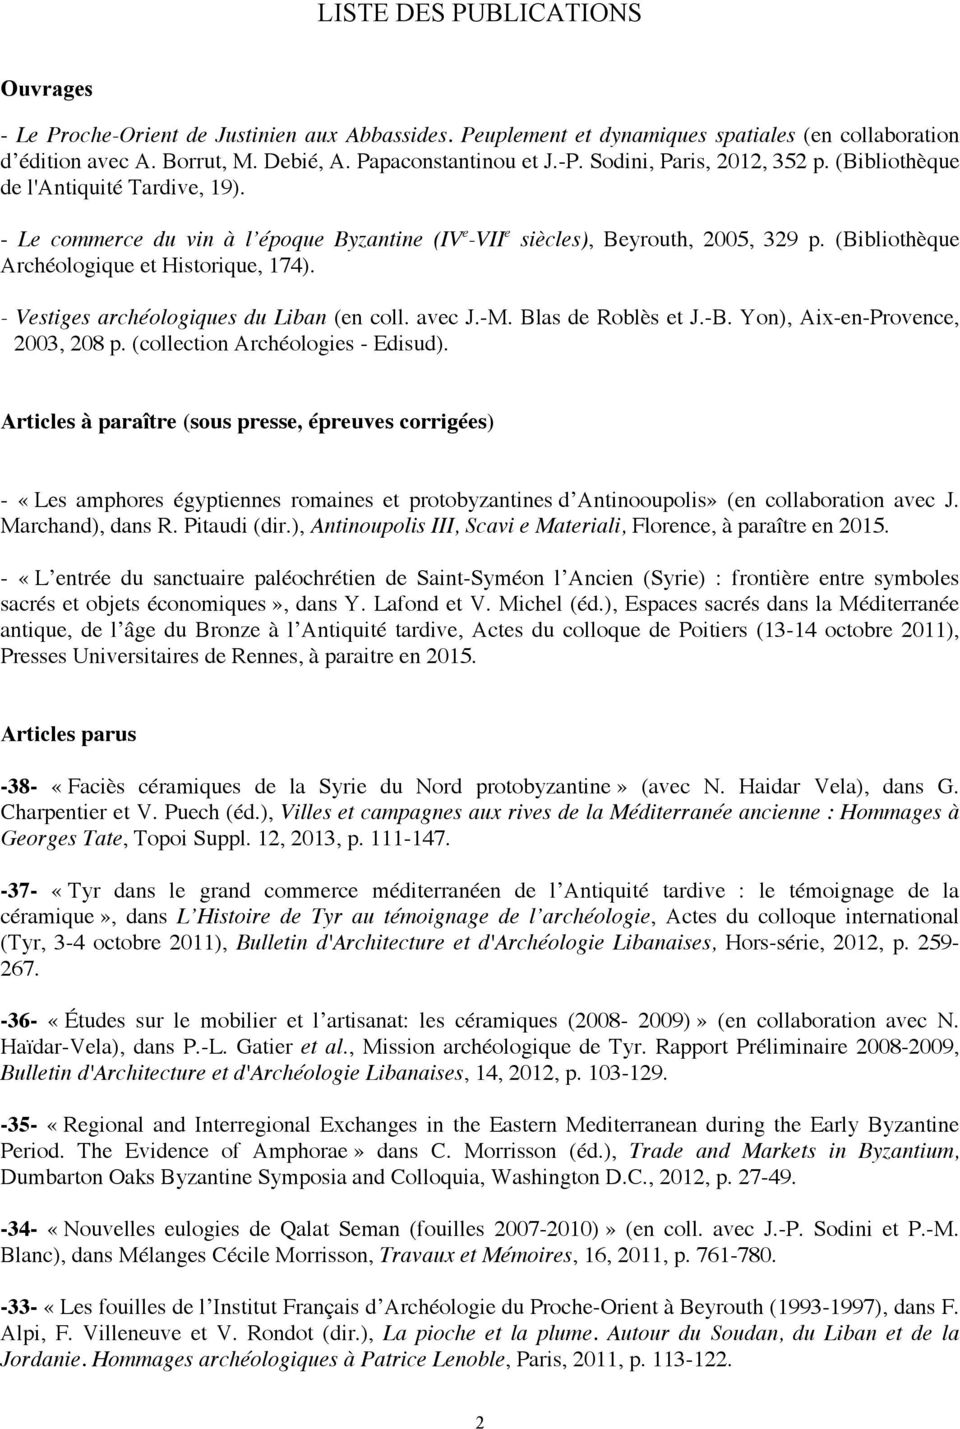 (Bibliothèque Archéologique et Historique, 174). - Vestiges archéologiques du Liban (en coll. avec J.-M. Blas de Roblès et J.-B. Yon), Aix-en-Provence, 2003, 208 p. (collection Archéologies - Edisud).